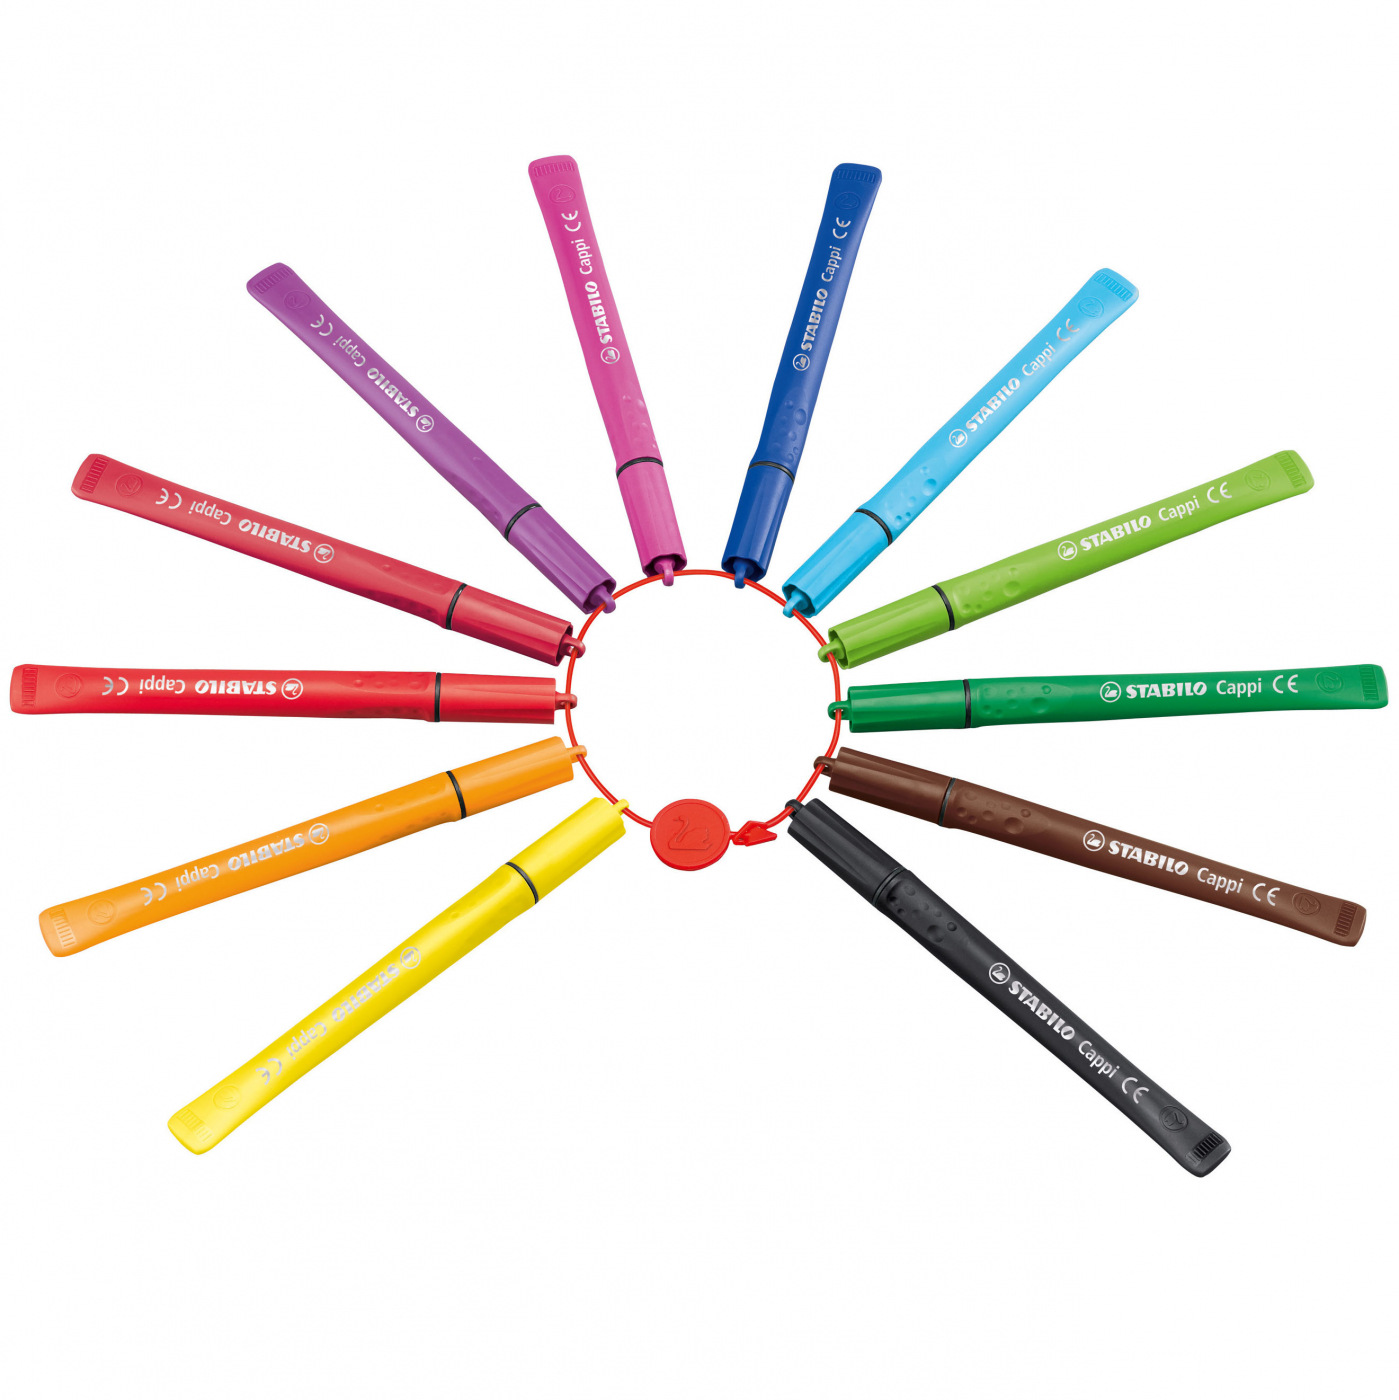 Cappi 24-pack in the group Kids / Kids' Pens / Felt Tip Pens for Kids at Pen Store (125415)